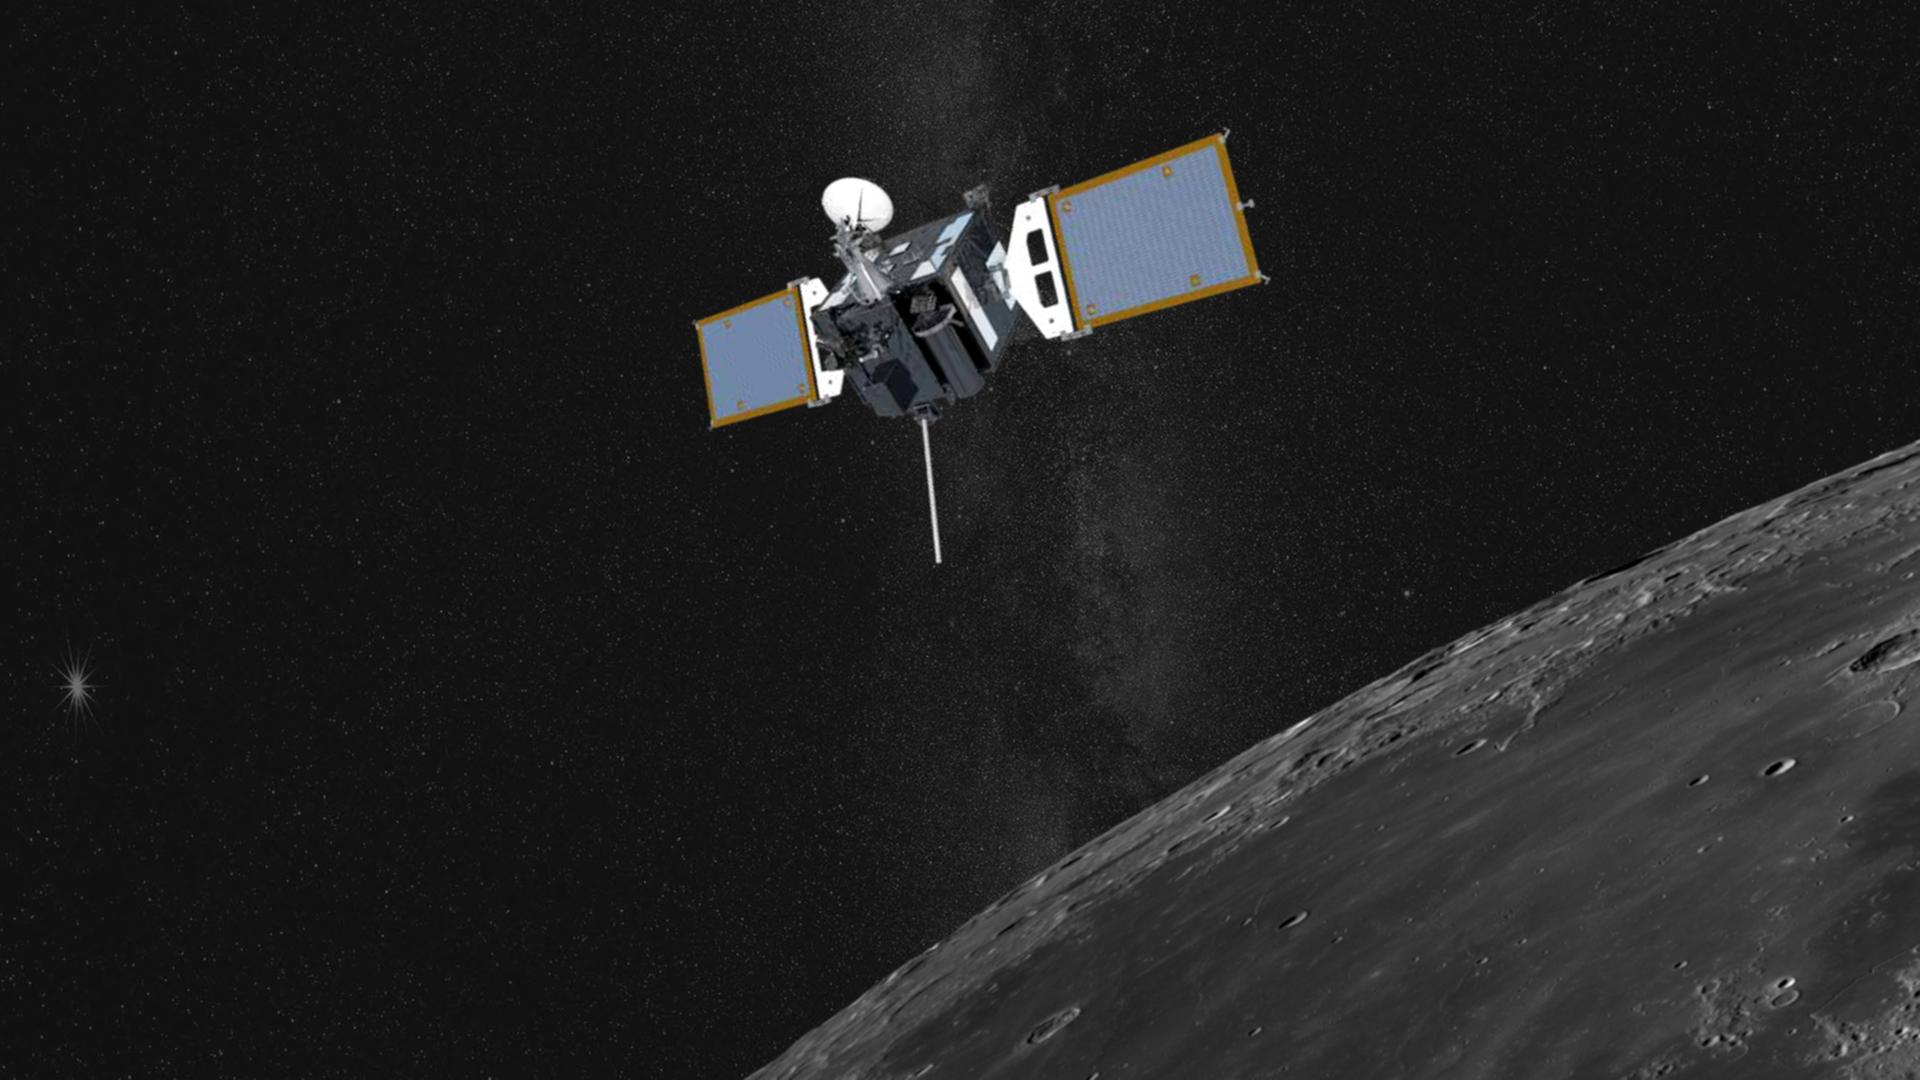 Auch in der Raumfahrt spielt Südkorea nach vorn: Seit Ende letzten Jahres umkreist die Raumsonde Danuri den Mond  

